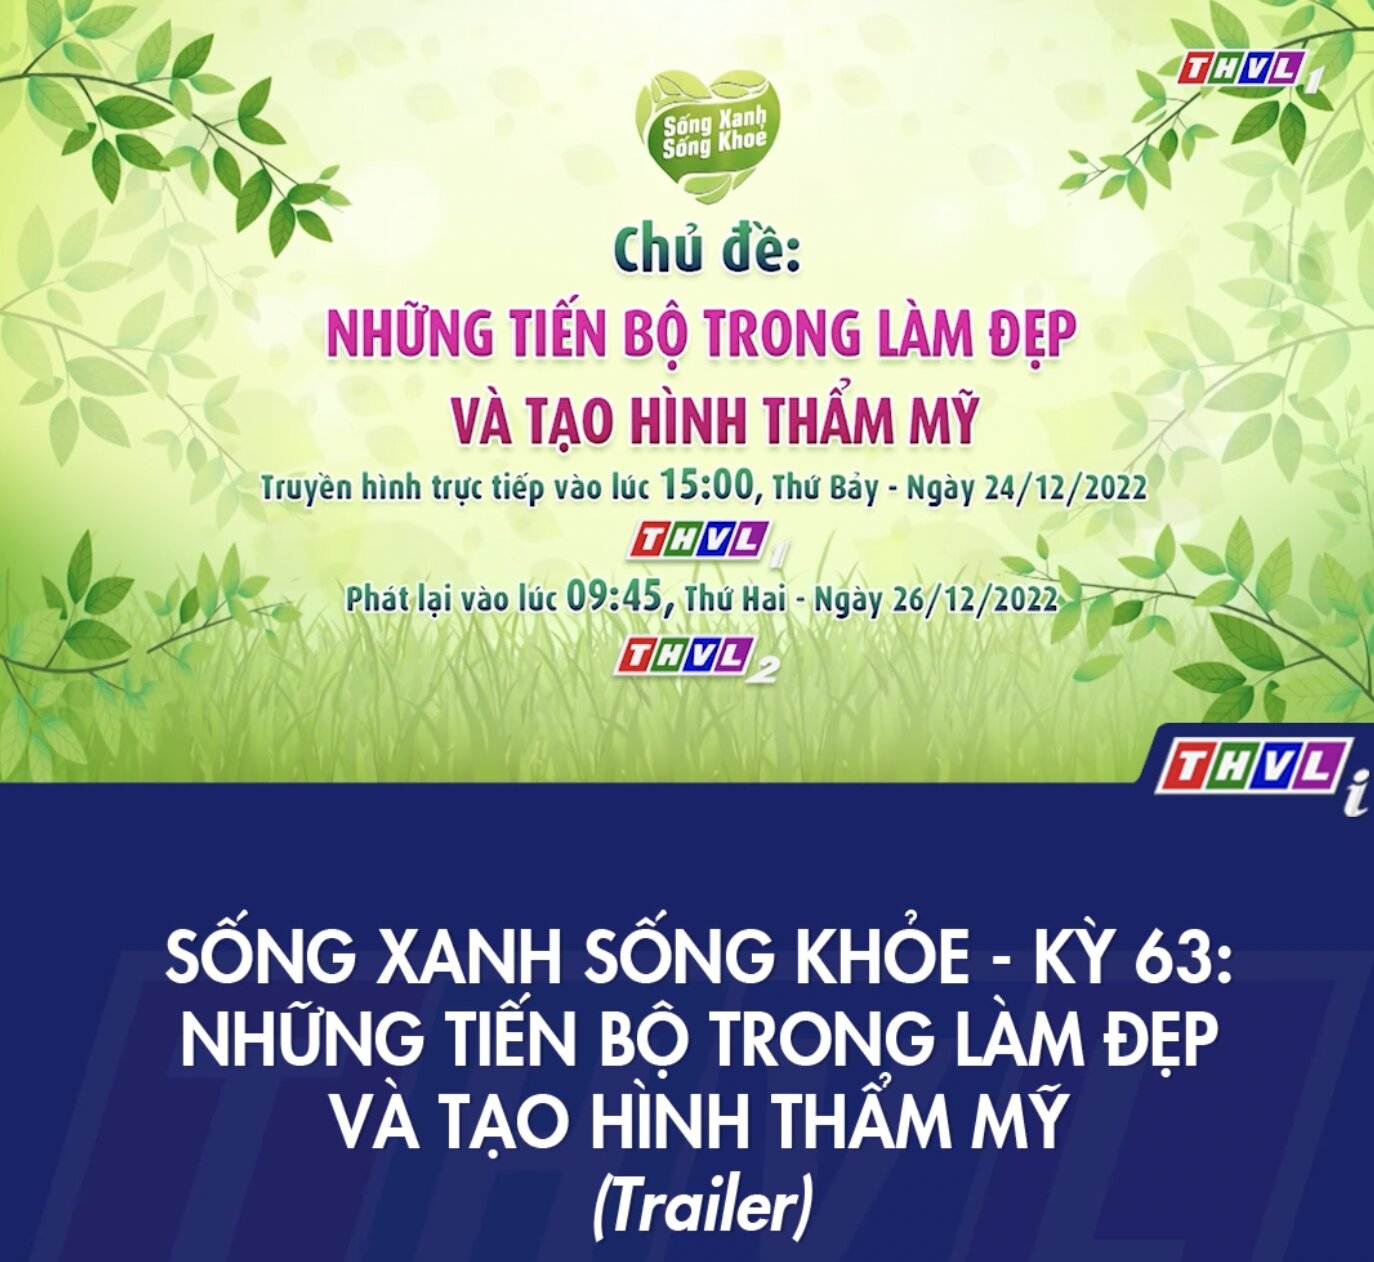 Chương trình “Sống xanh - Sống khỏe” trên ĐTHVL do Xline và Xcelens Vietnam đồng tài trợ